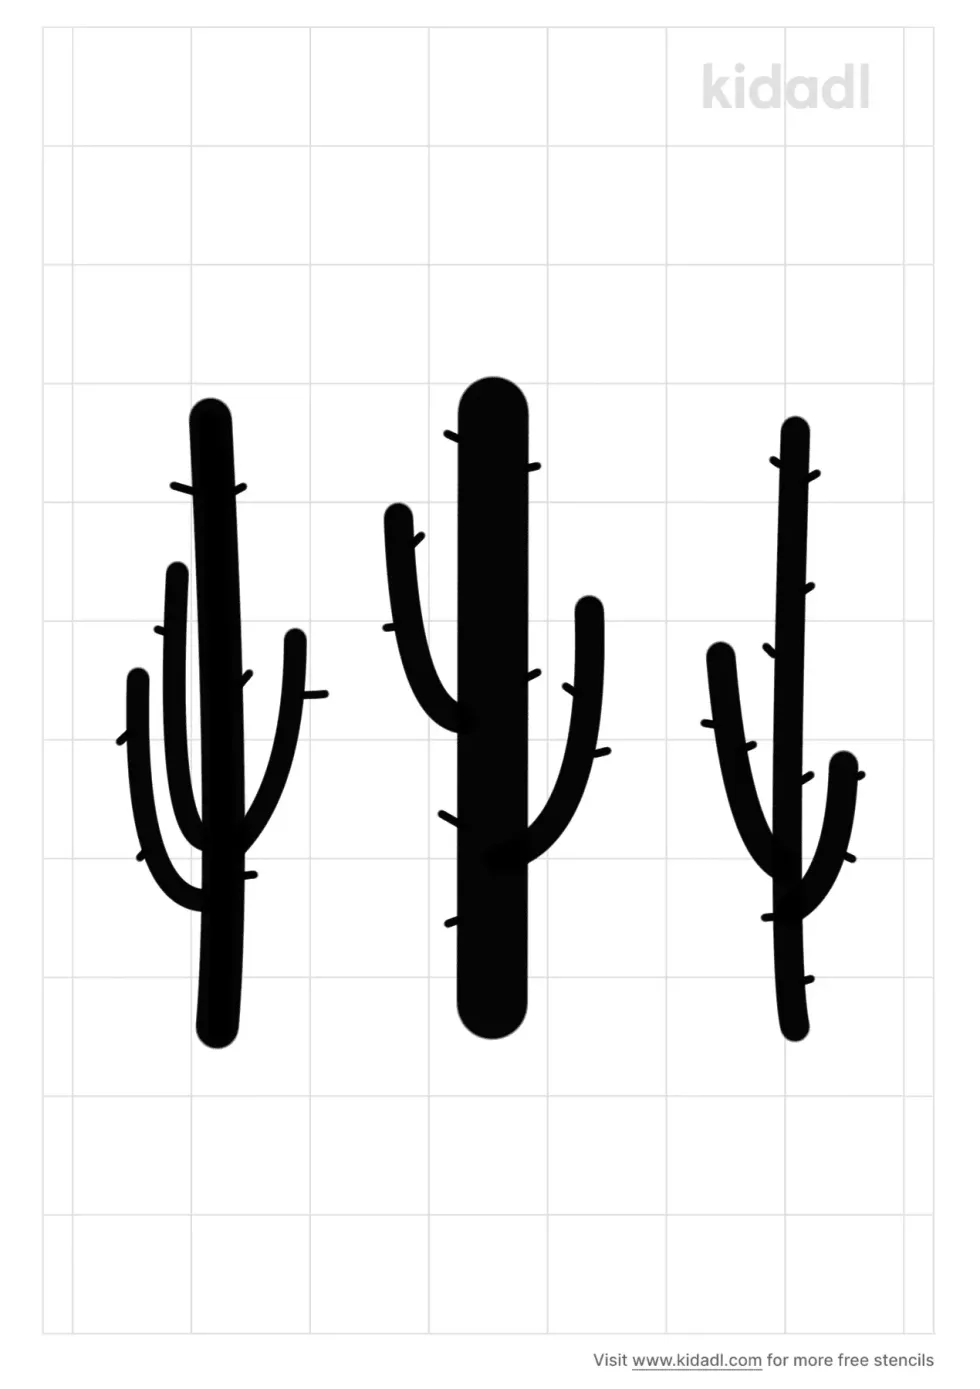 Cactus Bunch Stencil